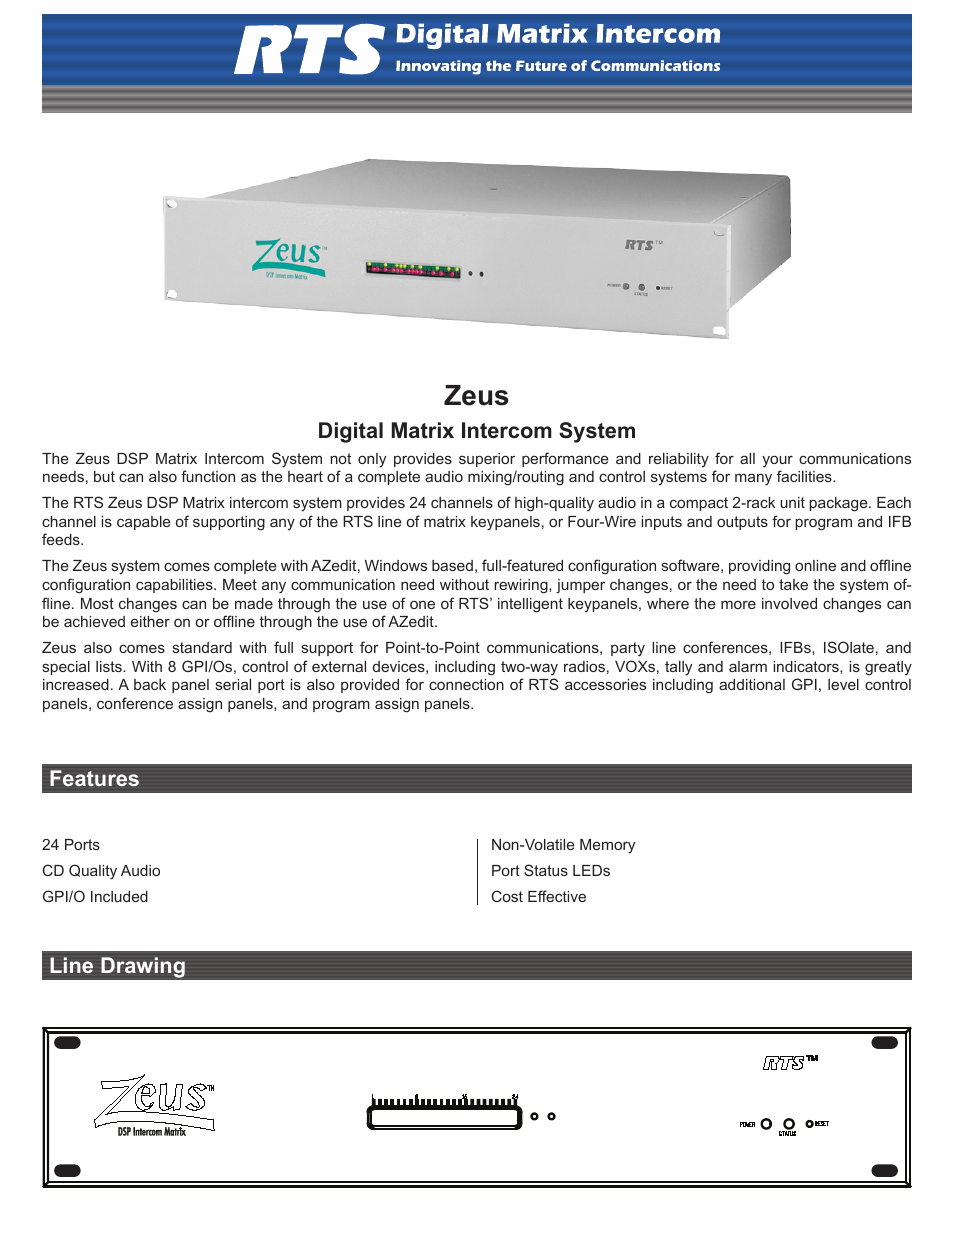 Zeus Digital Matrix Intercom System